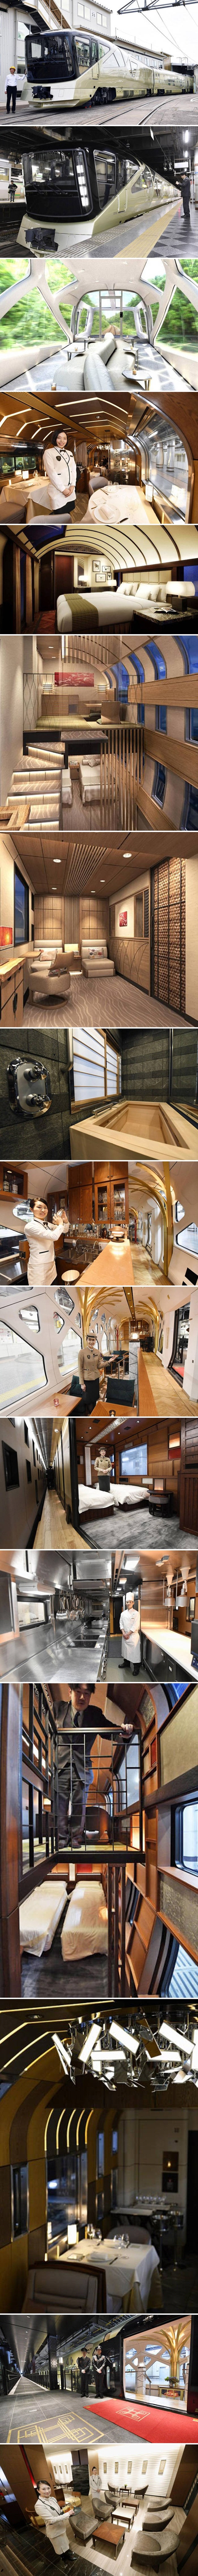 Najluksuzniji japanski vlak izgleda kao prava mobilna palača!